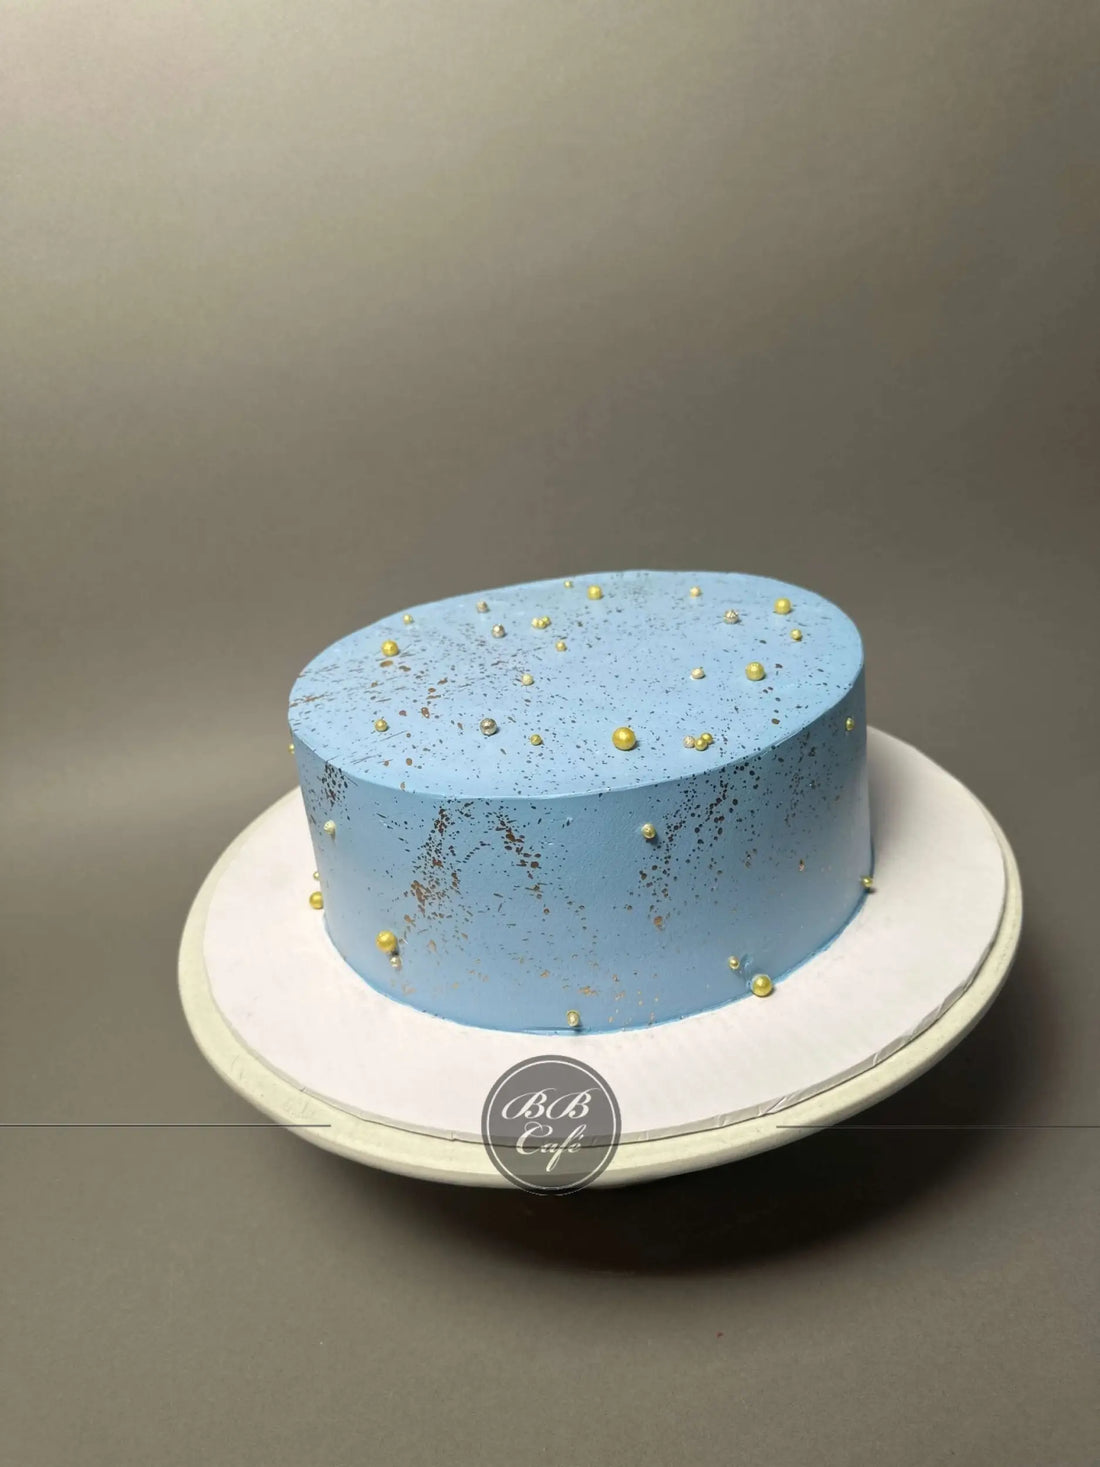 Gold splatter on whipped cream - custom cake